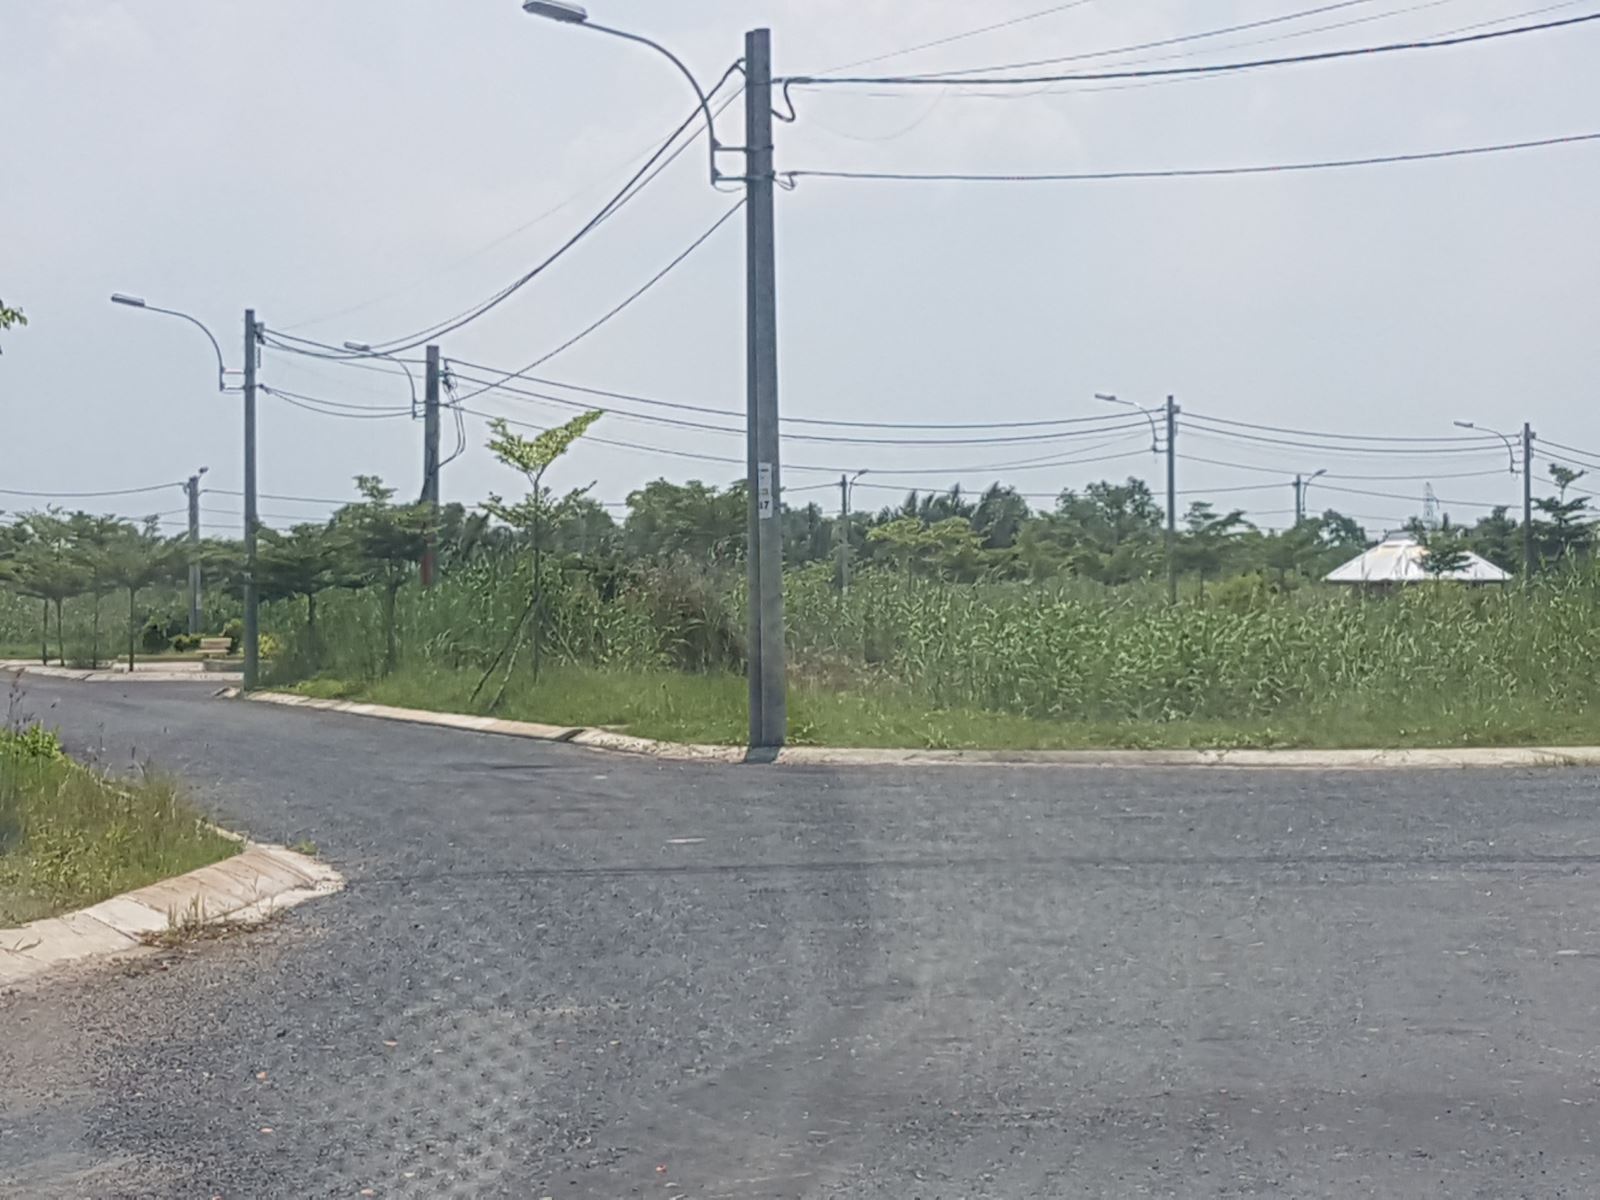 DA SaiGon Village: CĐT bán đất nền khi chưa hoàn thiện cơ sở hạ tầng?